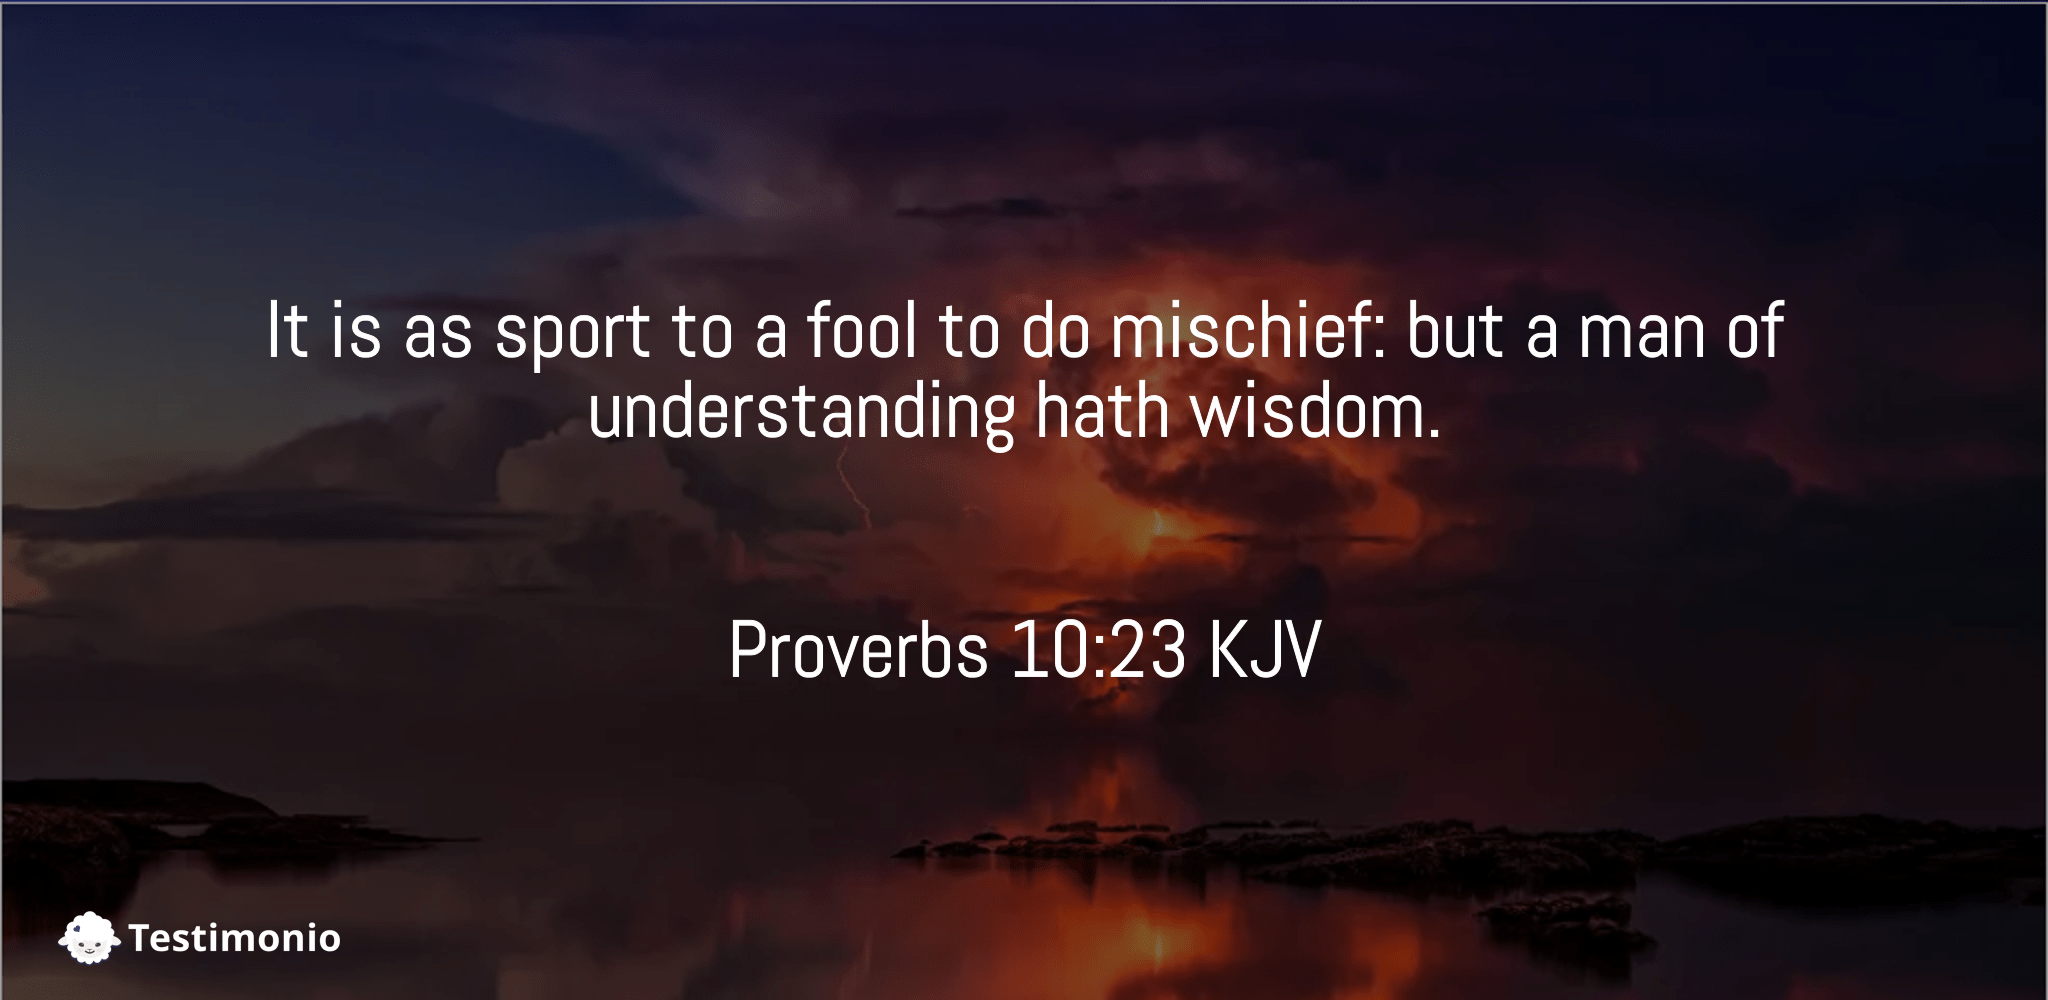 Proverbs 10:23